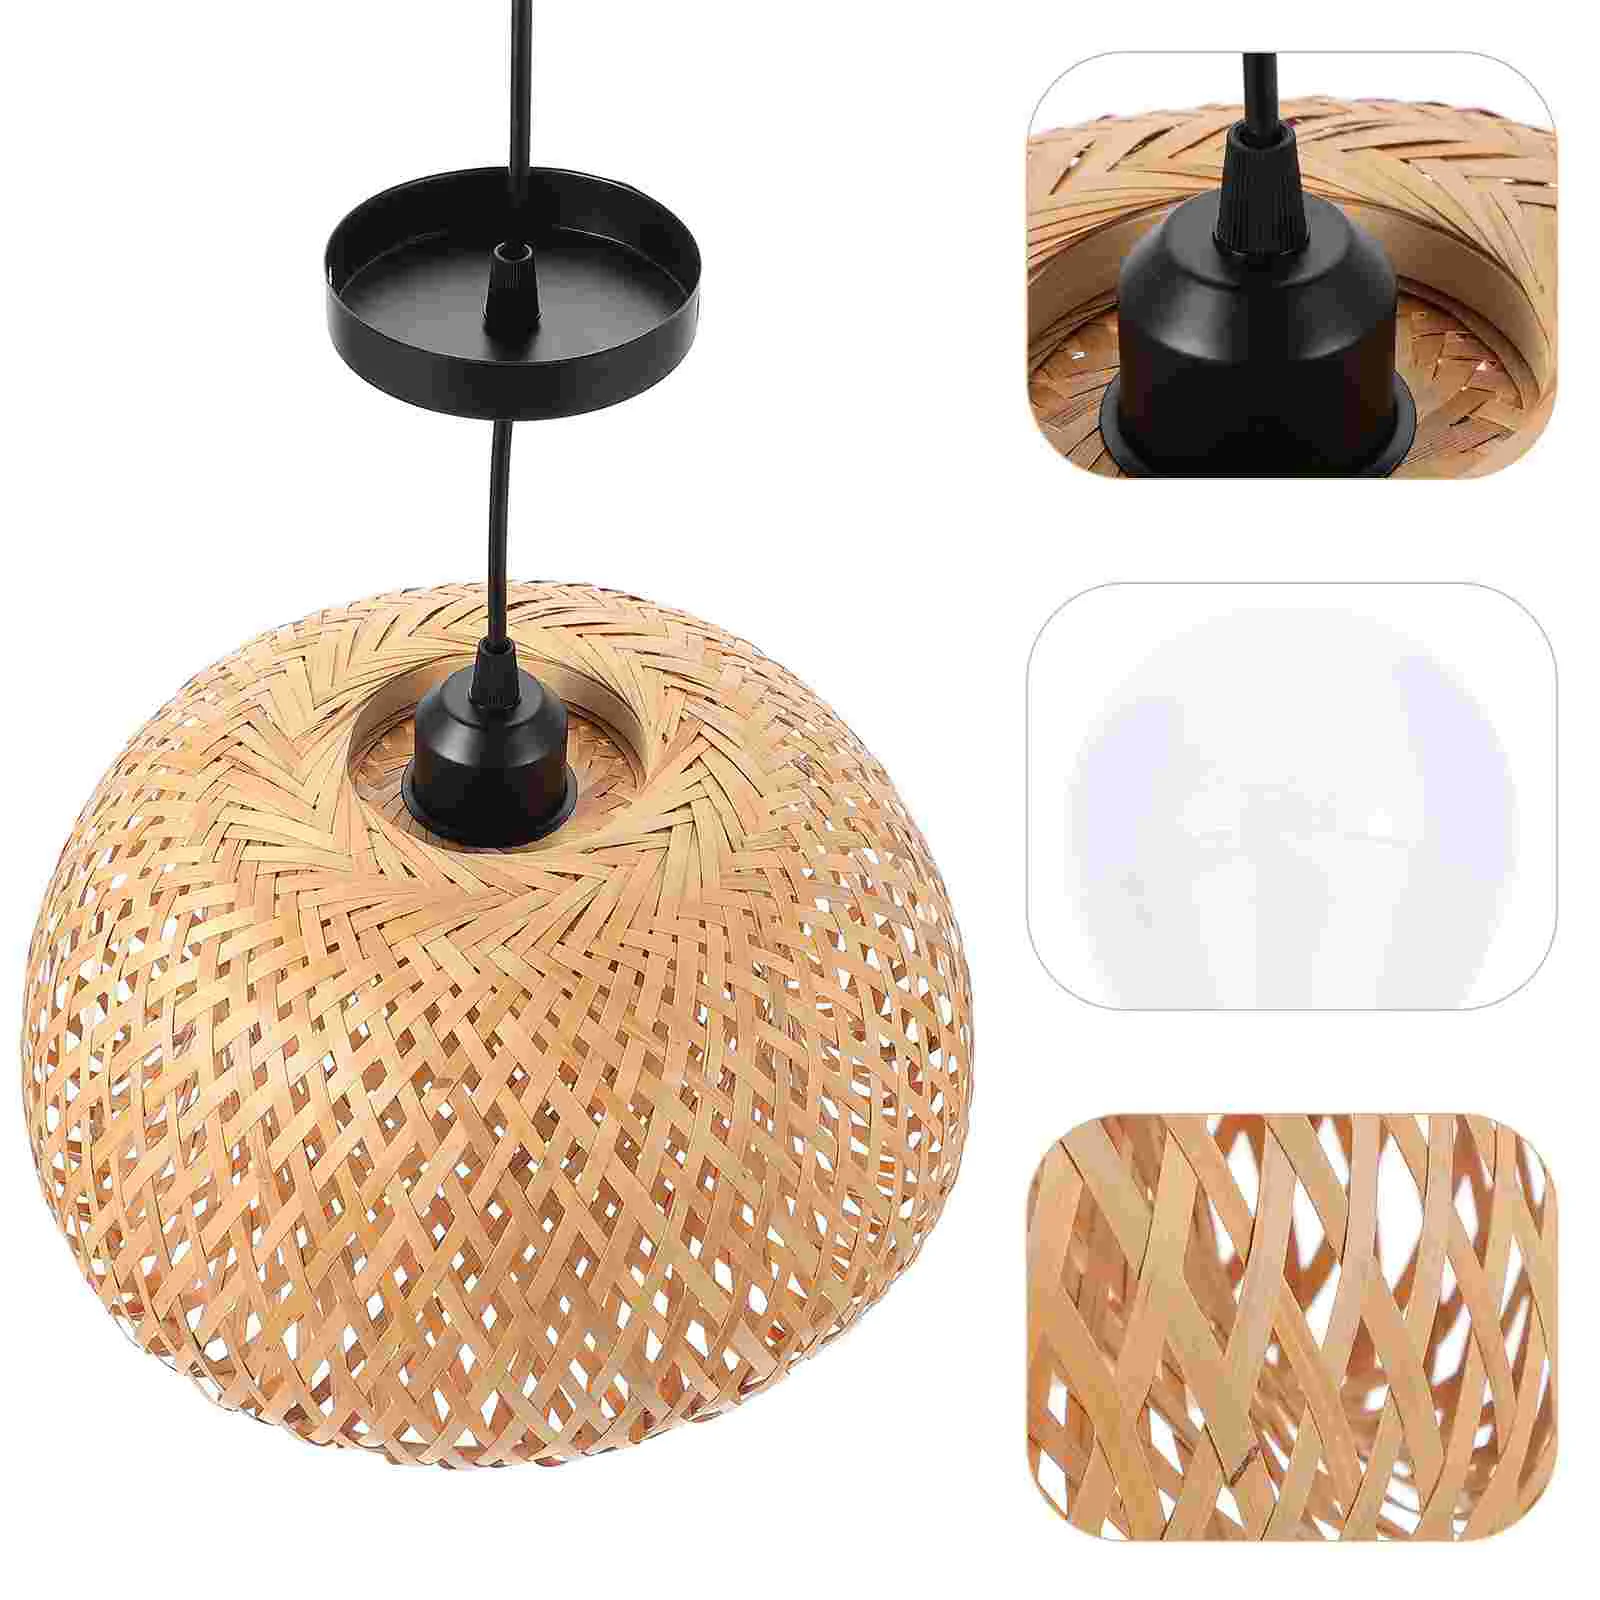 

Домашняя люстра, декоративный потолочный светильник в пасторальном стиле, Плетеный бамбуковый подвесной китайский светильник